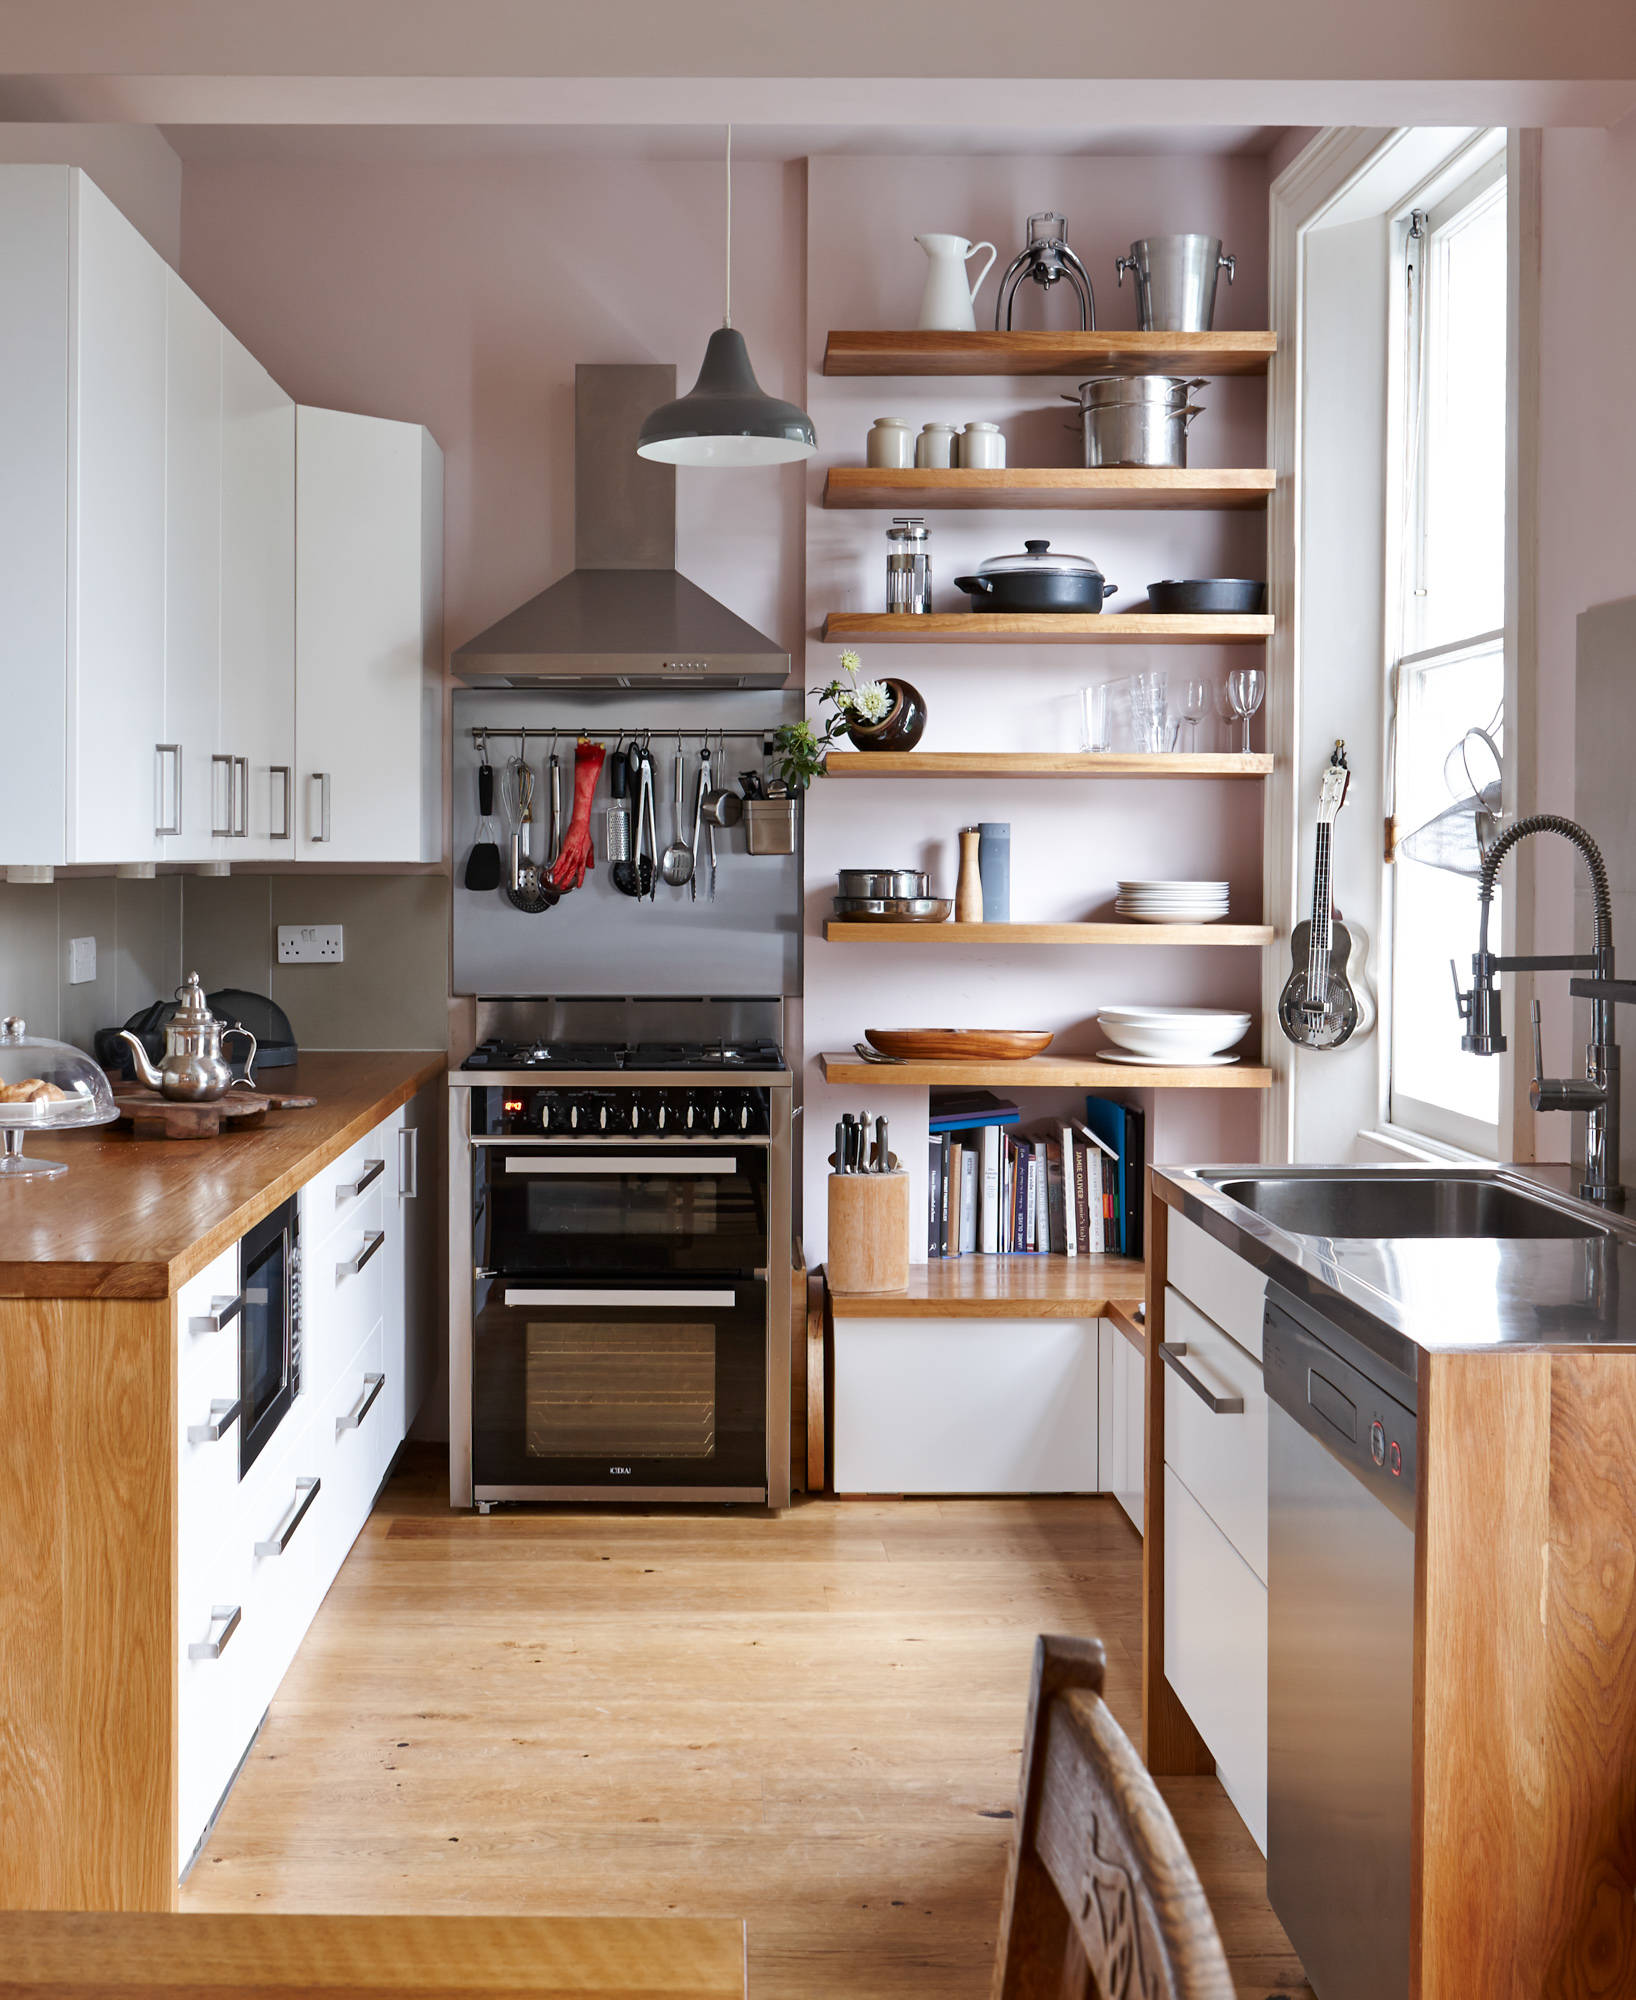 Kitchen Units For Small Kitchens Small Kitchen Options: Smart Storage ...